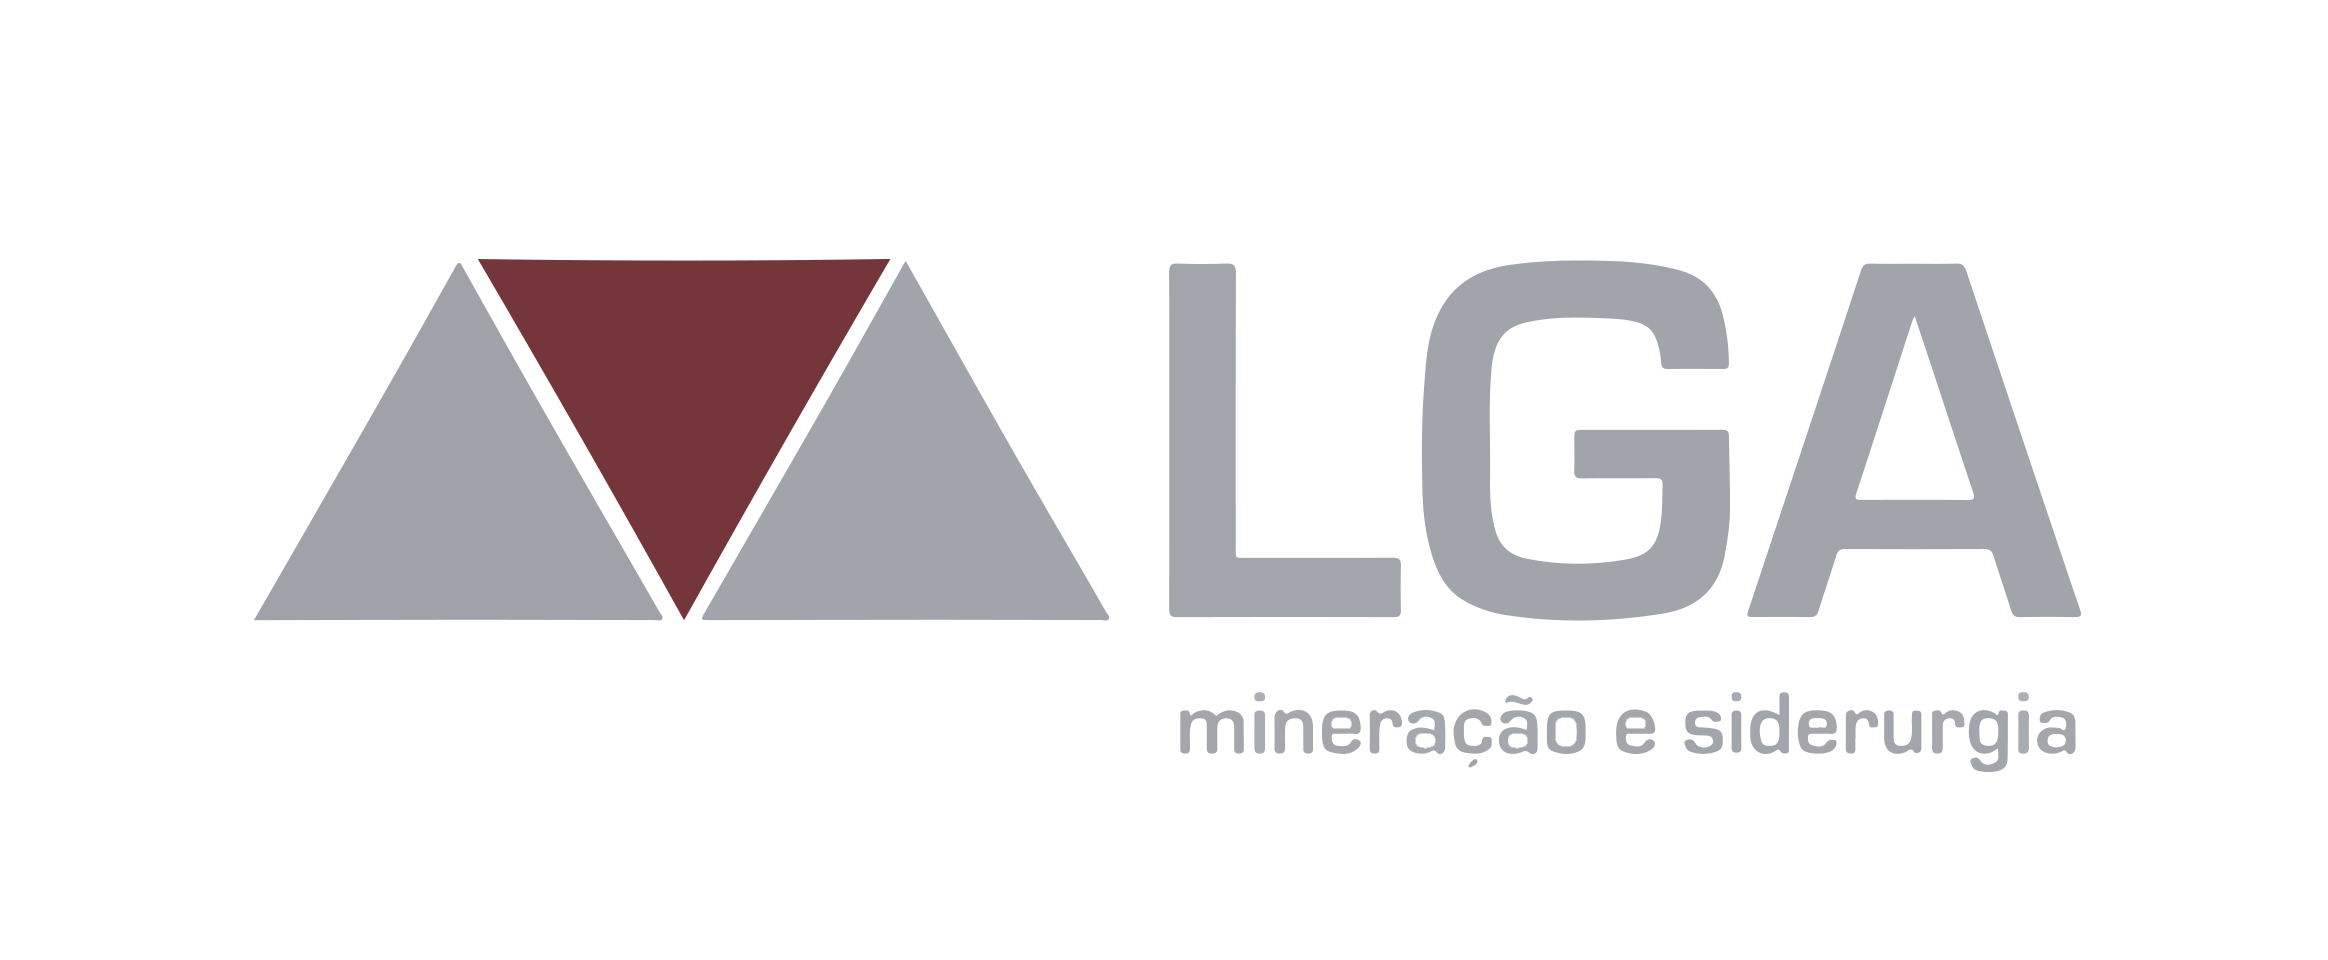 Logotipo LGA mineração Color